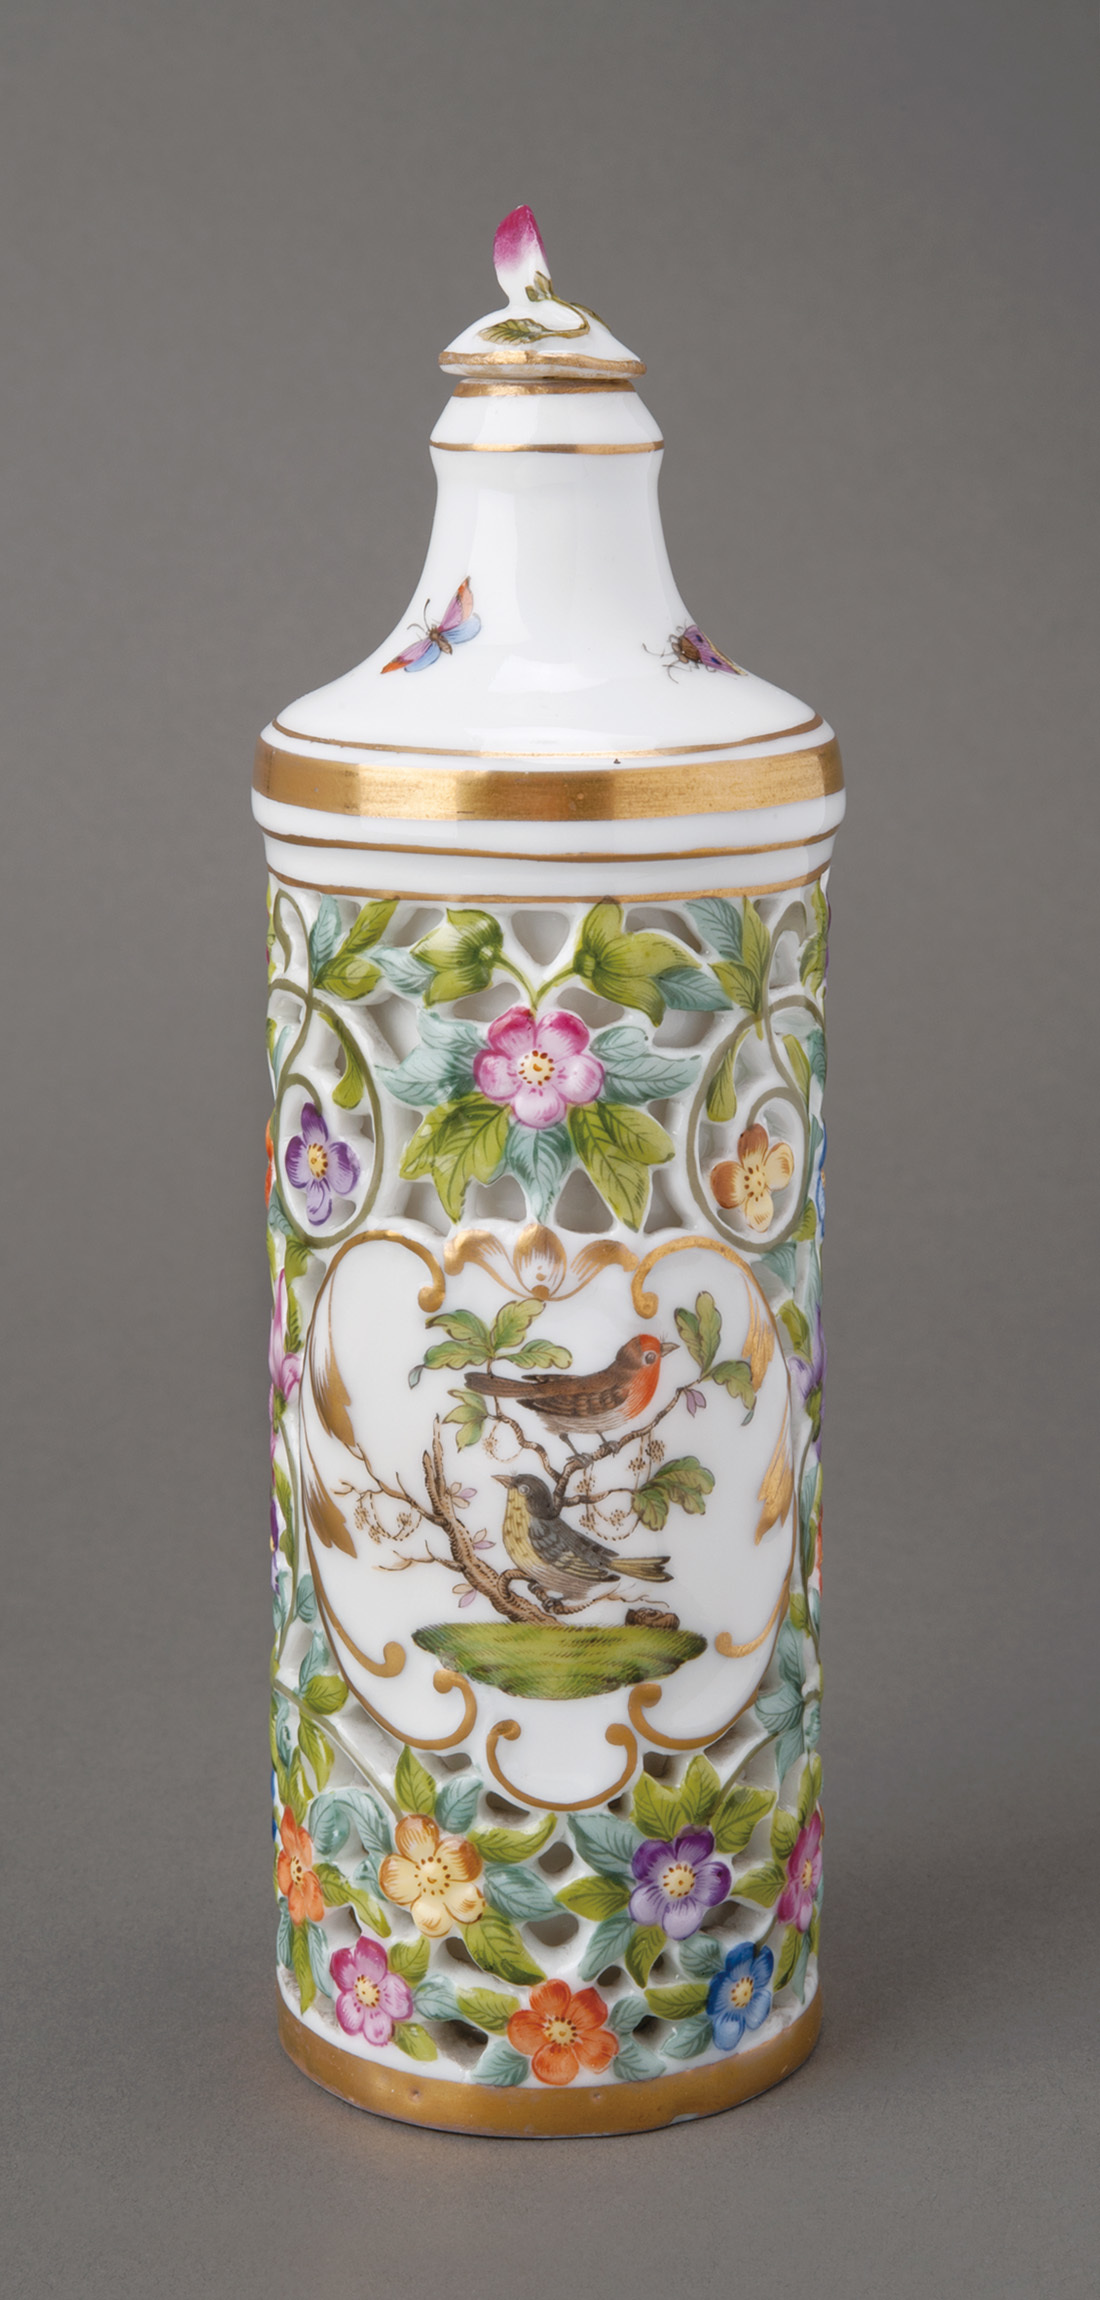 《色絵金彩「ロスチャイルド」文透彫瓶》 1869年 ブダペスト国立工芸美術館蔵